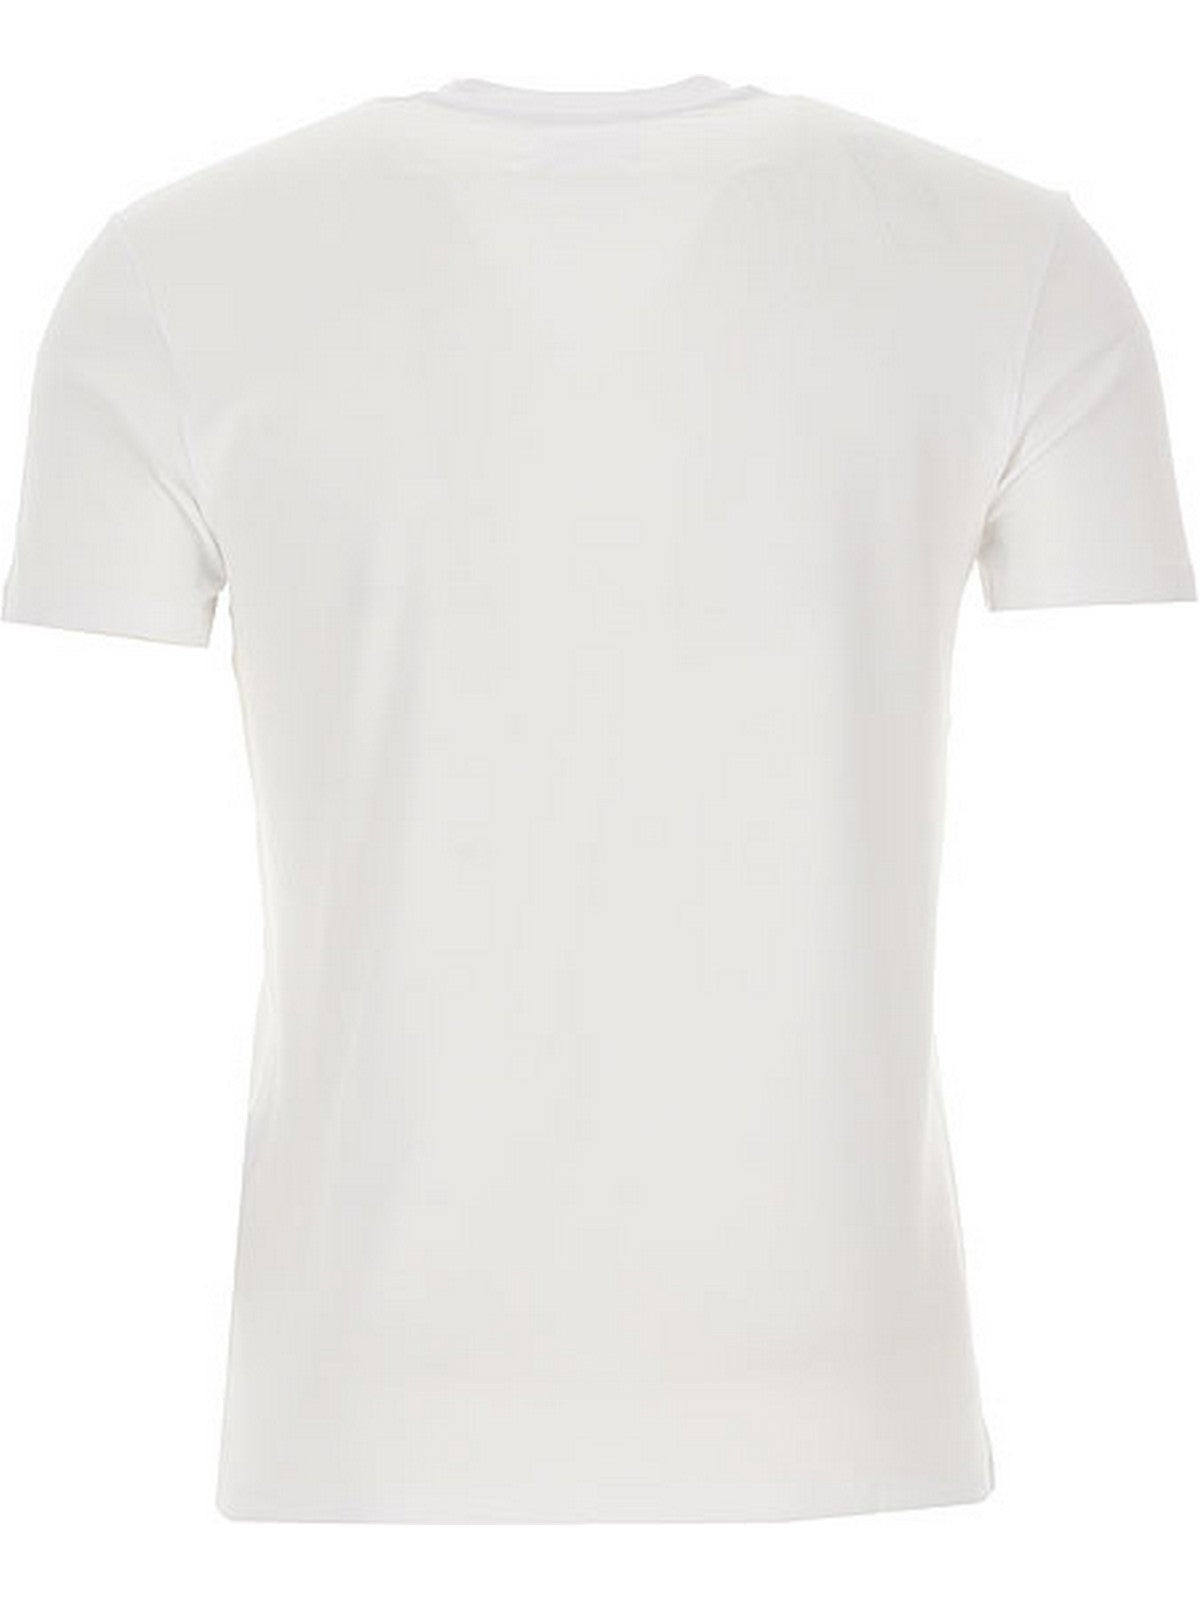 EMPORIO ARMANI T-Shirt e Polo Uomo  8N1TF0 1JCDZ 0100 Bianco